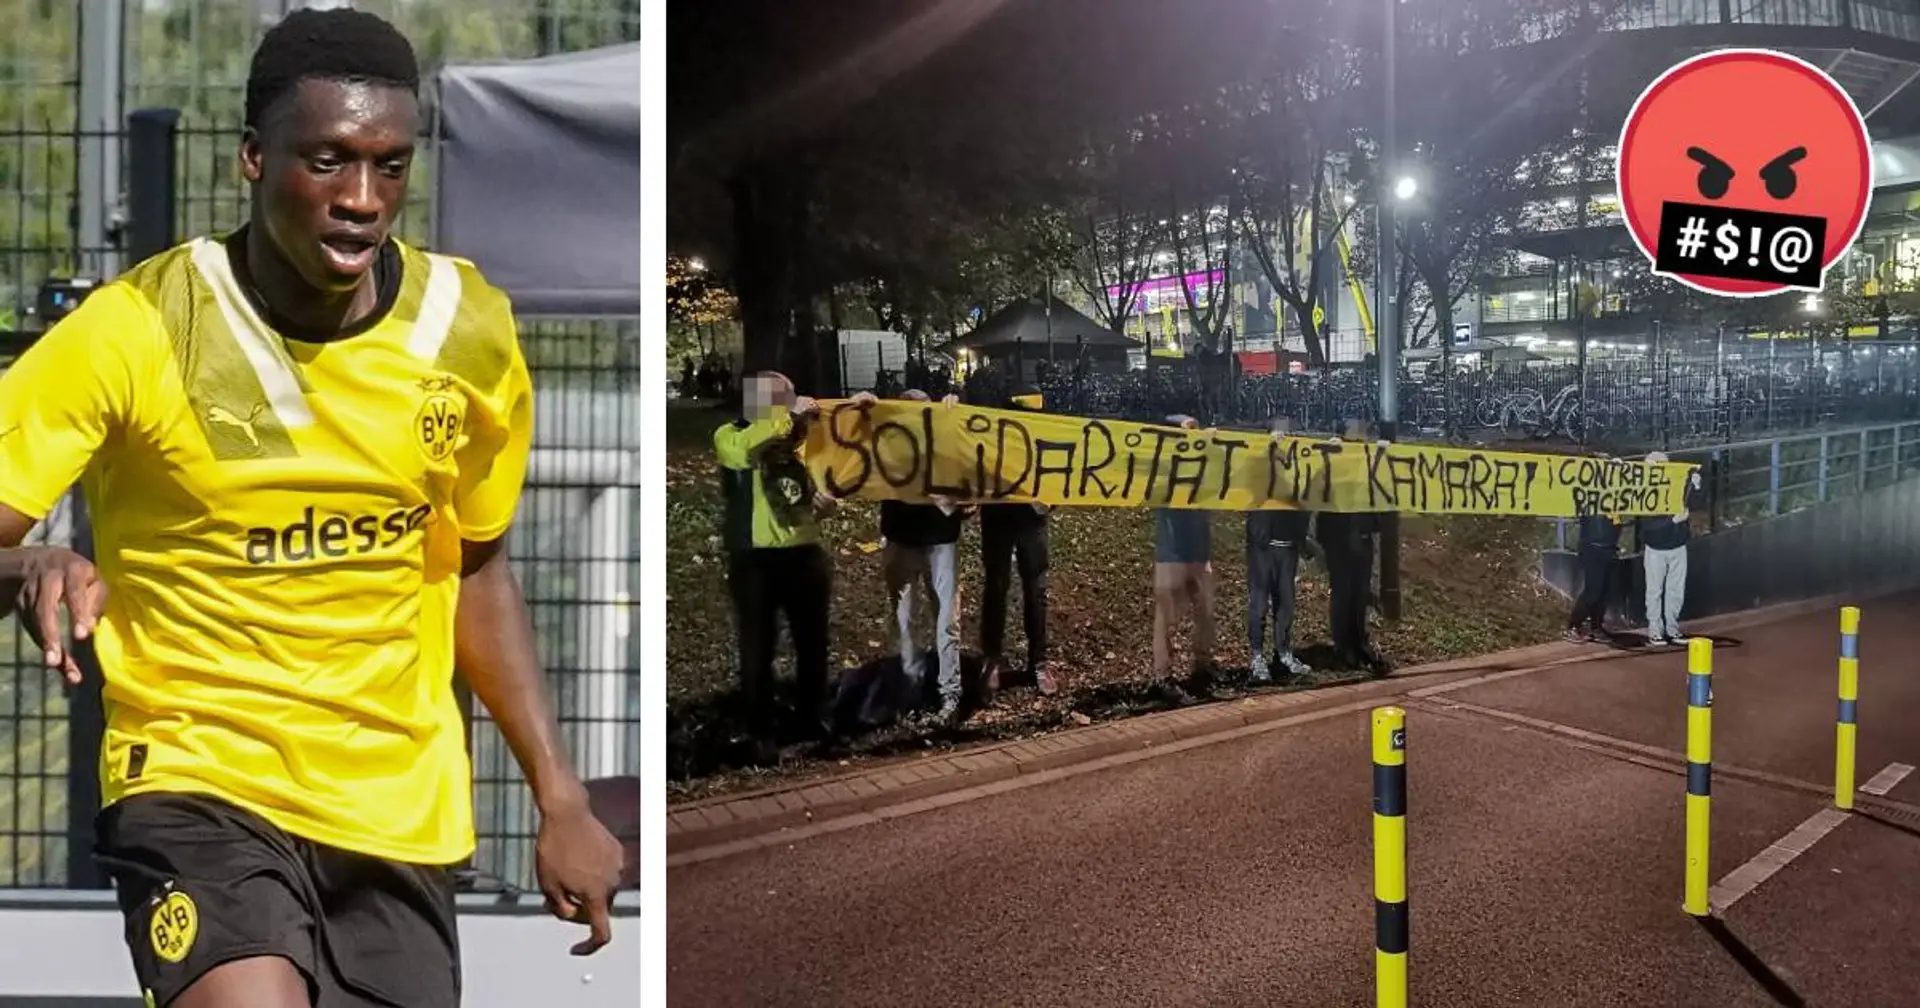 Totale Unverschämtheit: UEFA verbietet den BVB-Fans, das Spruchband "Solidarität mit Kamara!" ins Stadion zu bringen